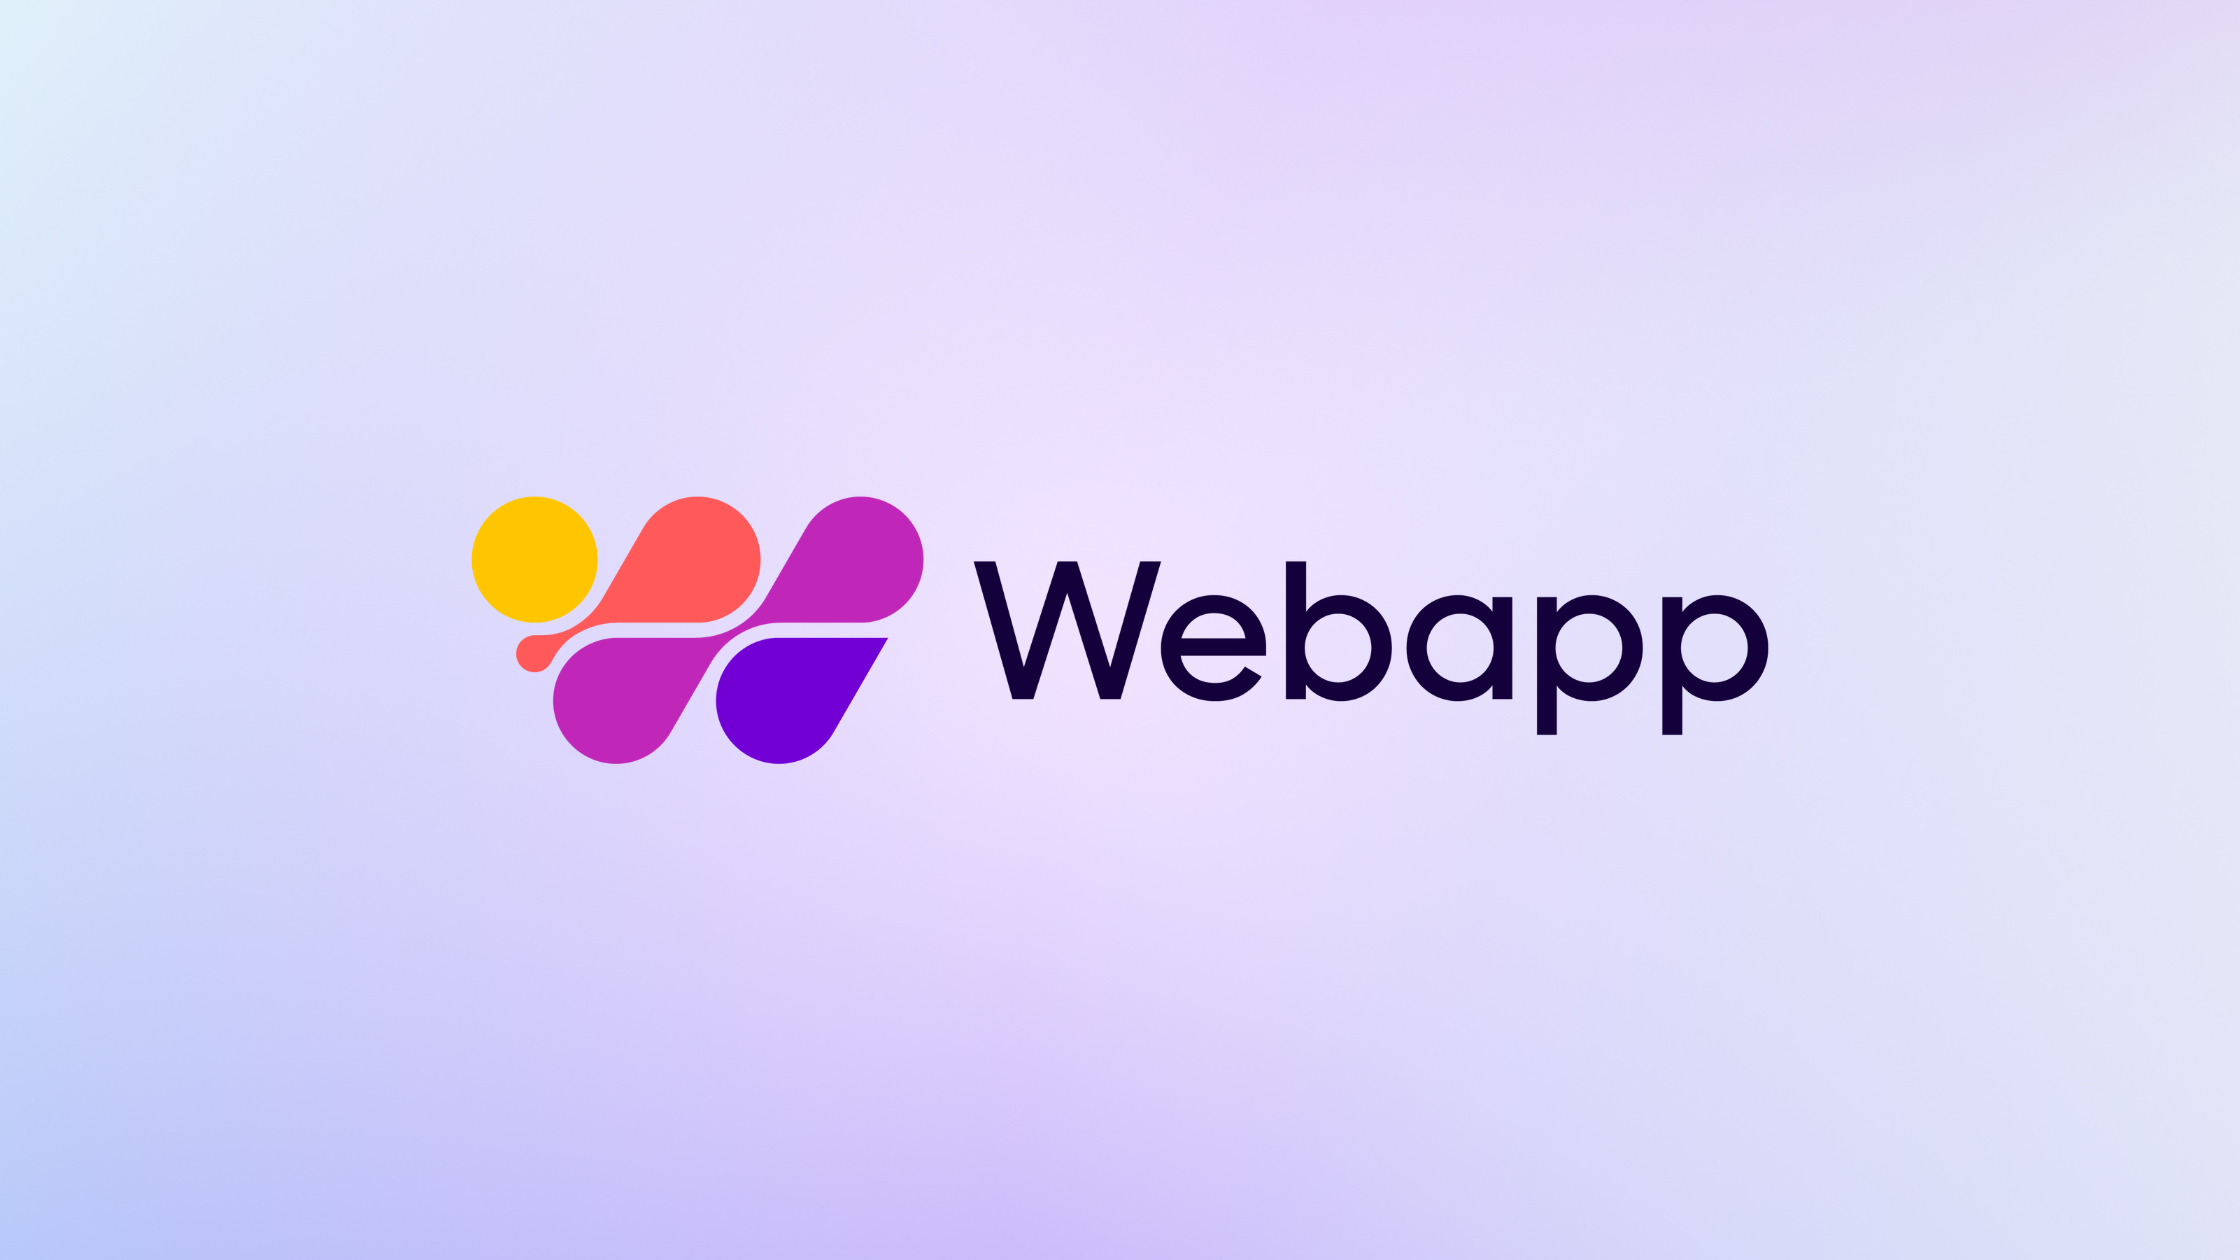 რა არის Webapp ?